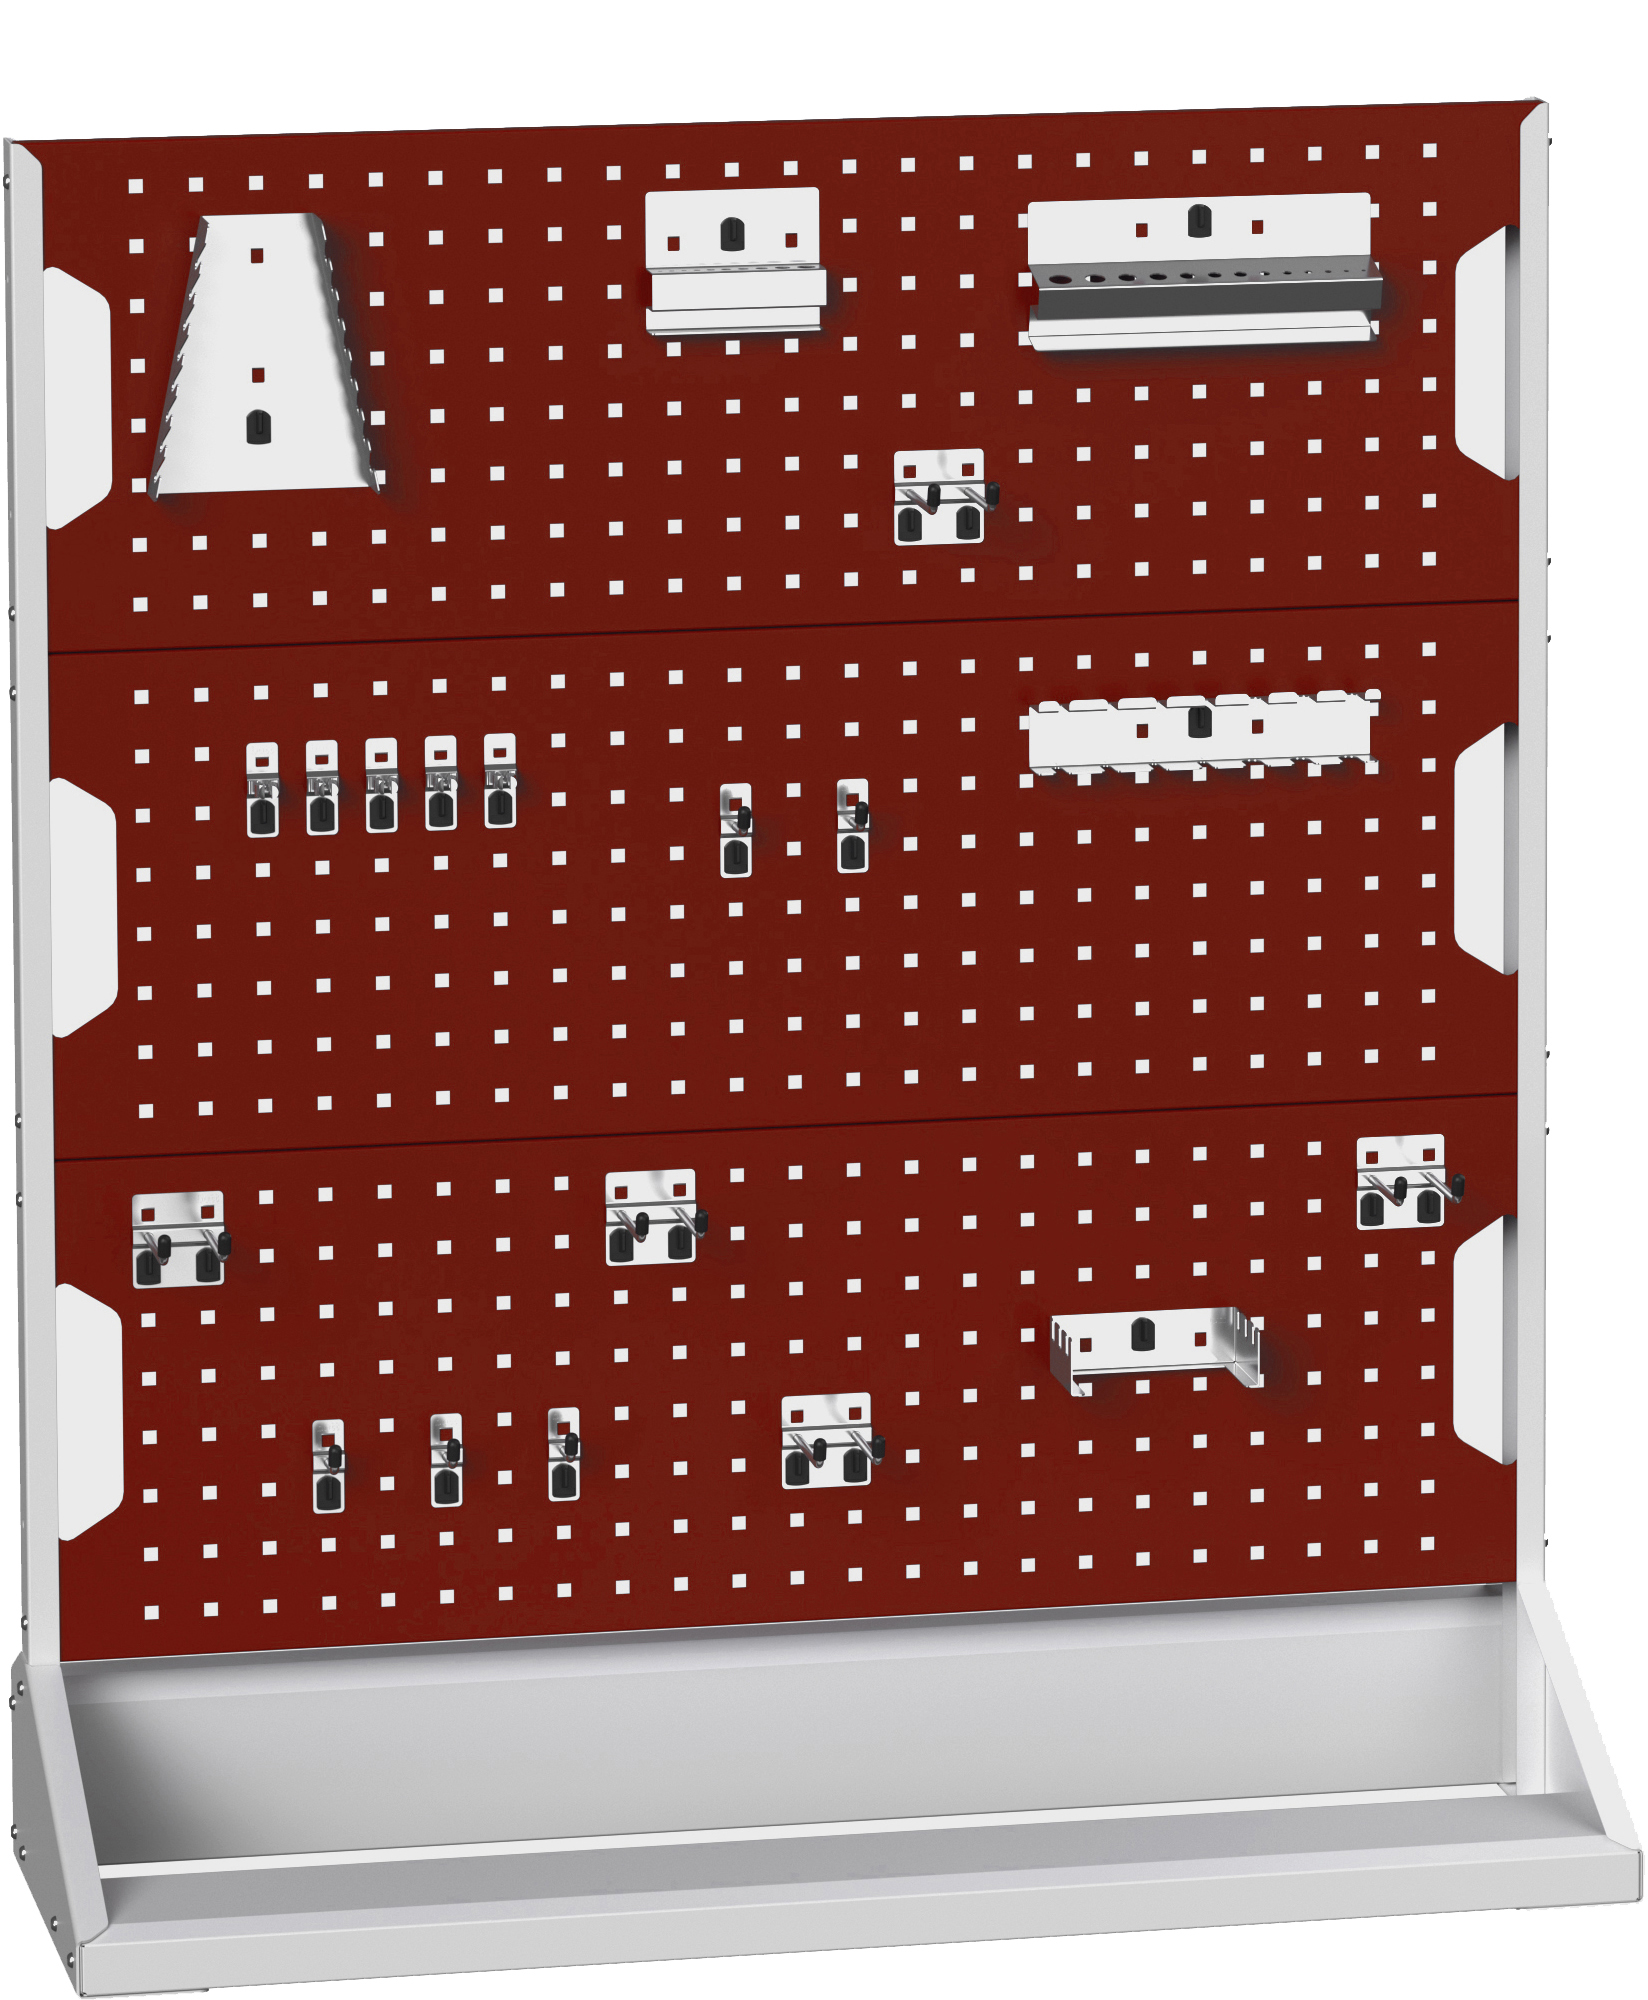 Bott Perfo Panel Rack (Single Sided) - 16917300.24V